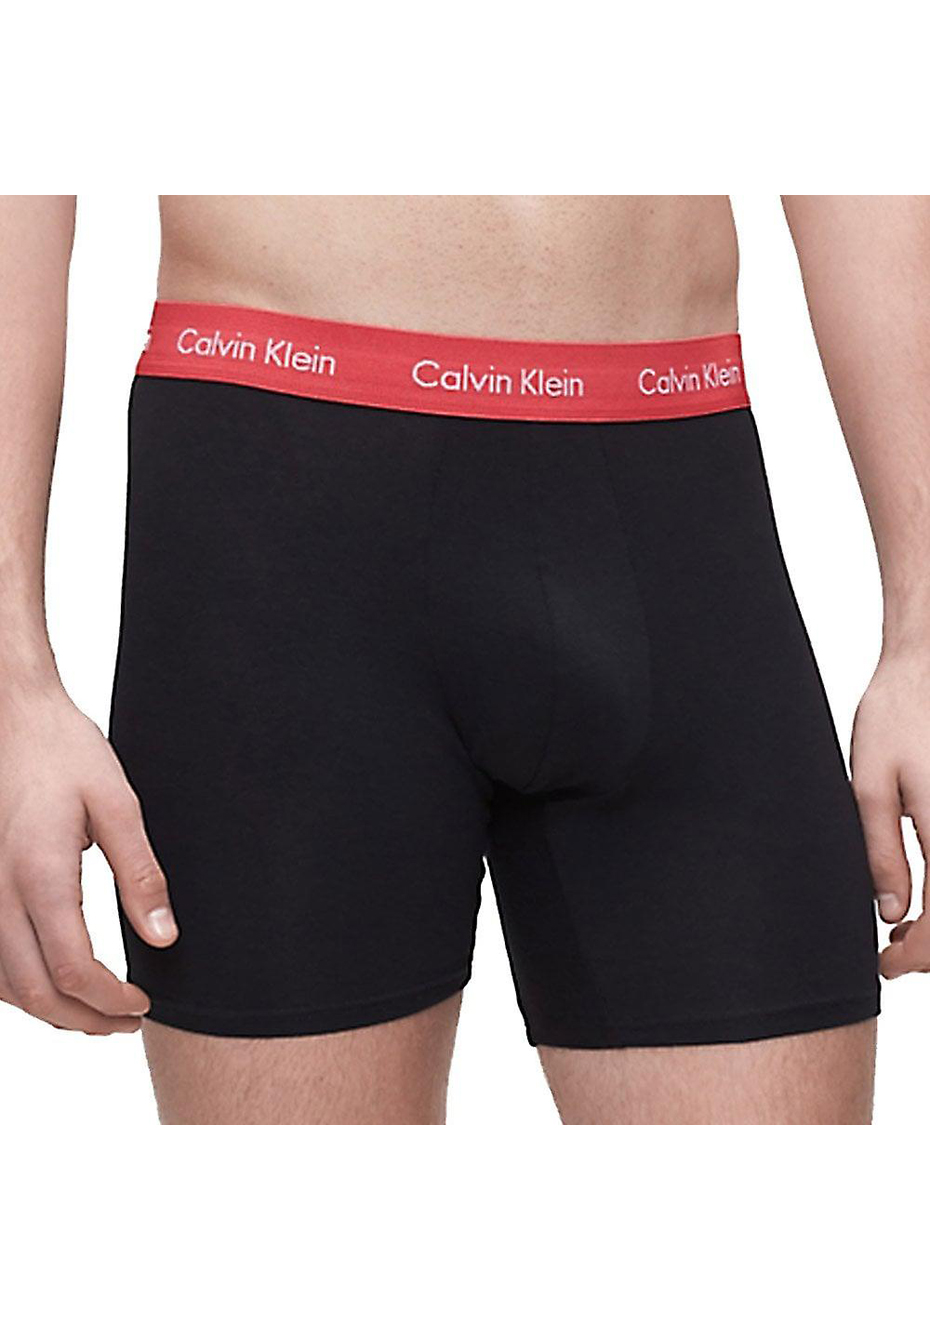 calvin klein cotton stretch boxer brief